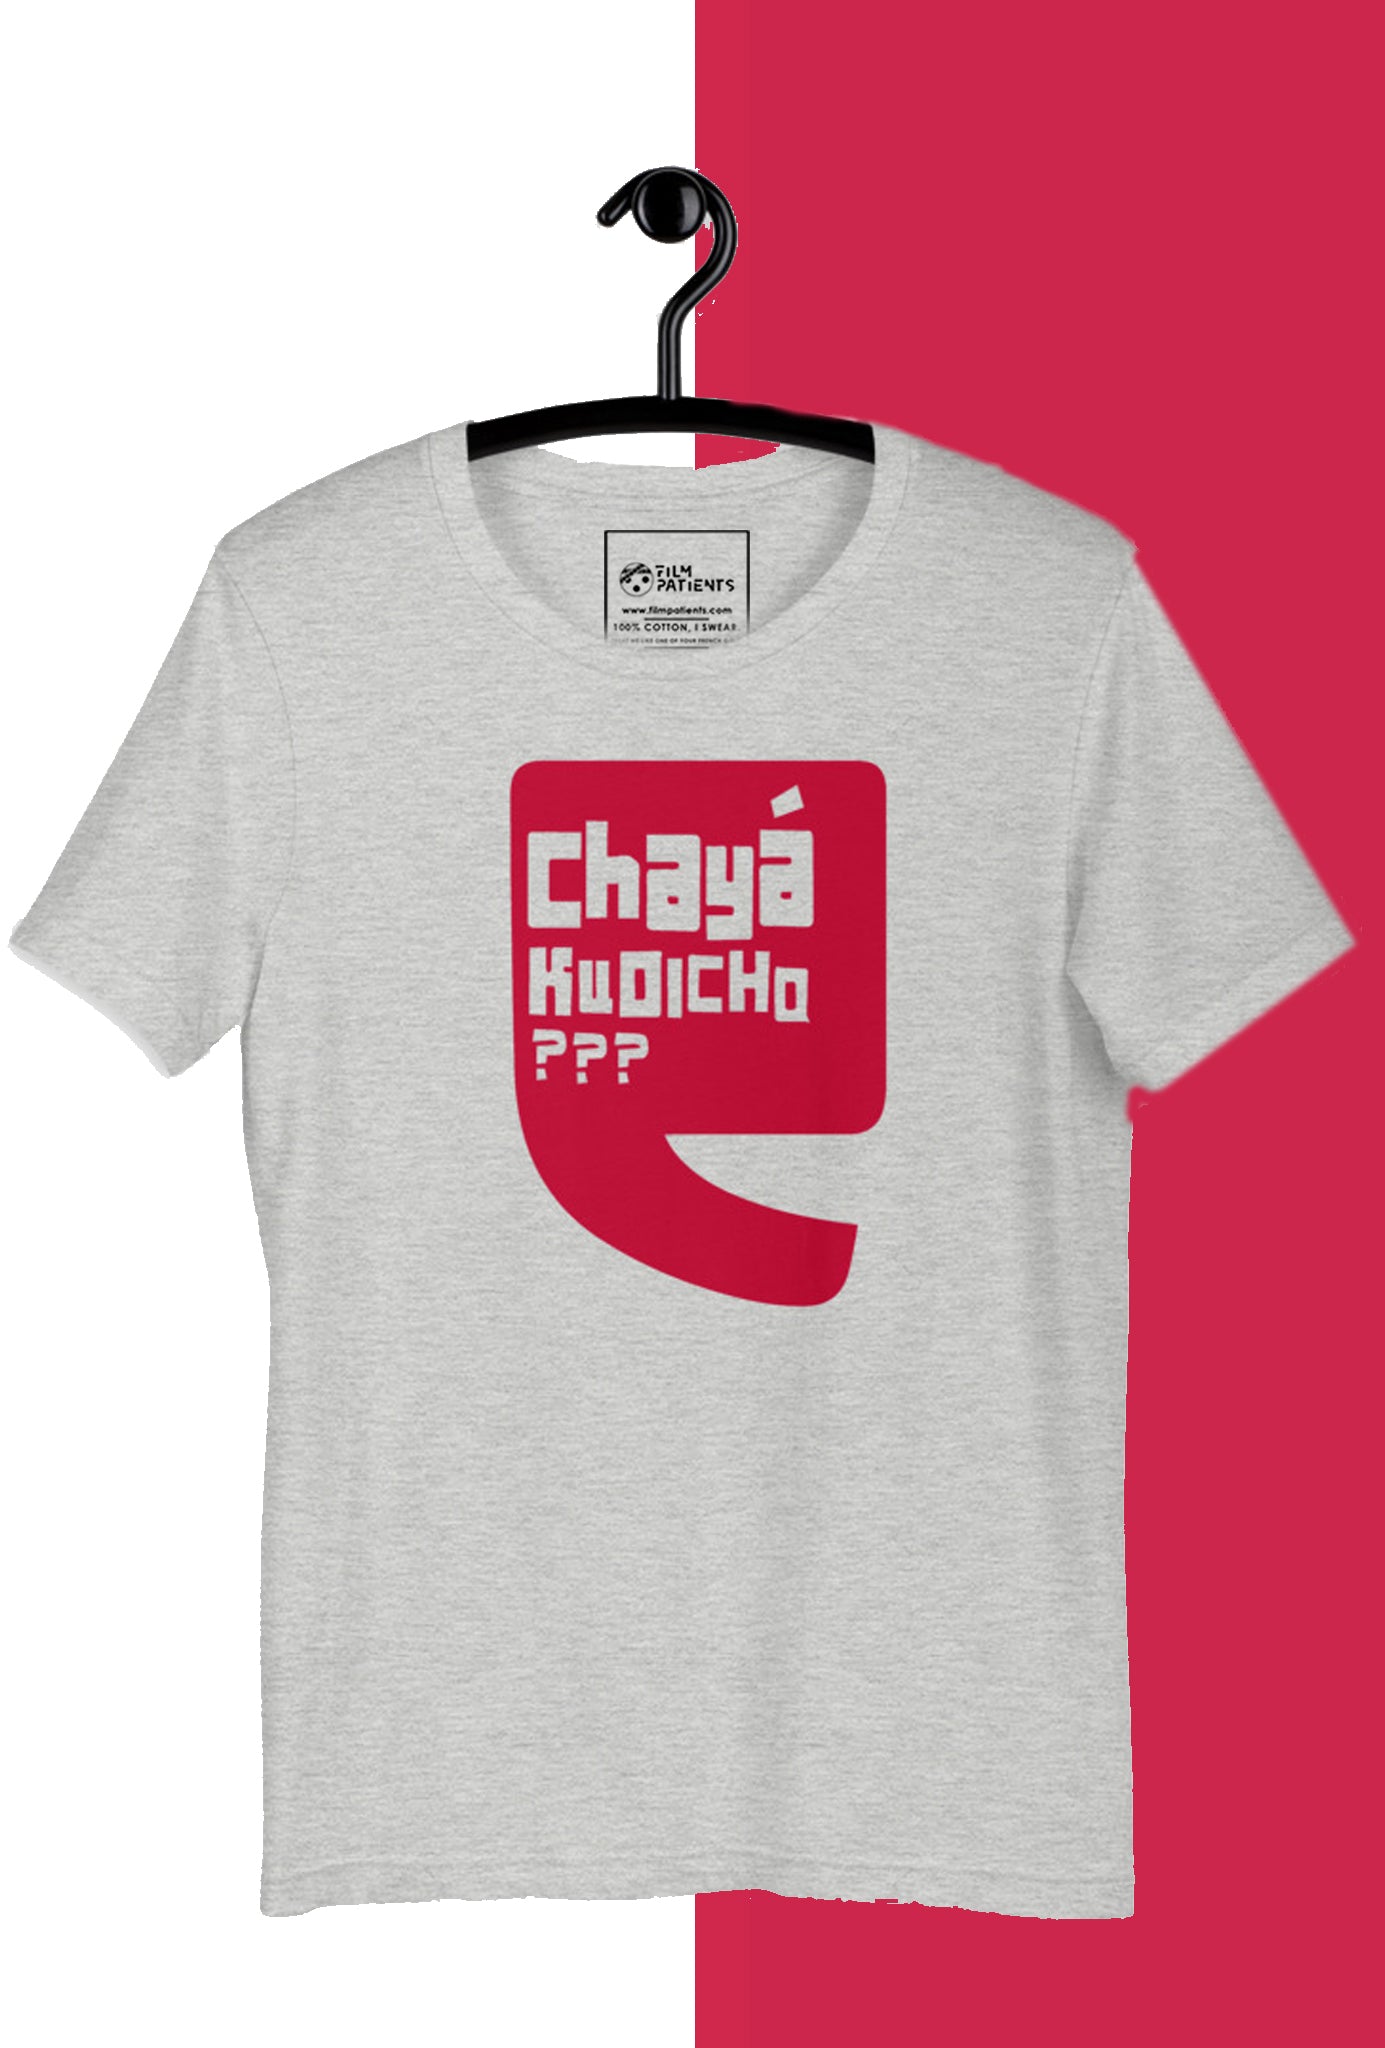 Chaya Kudicho Unisex T-shirt for Teaholics | Malayalam T-shirt